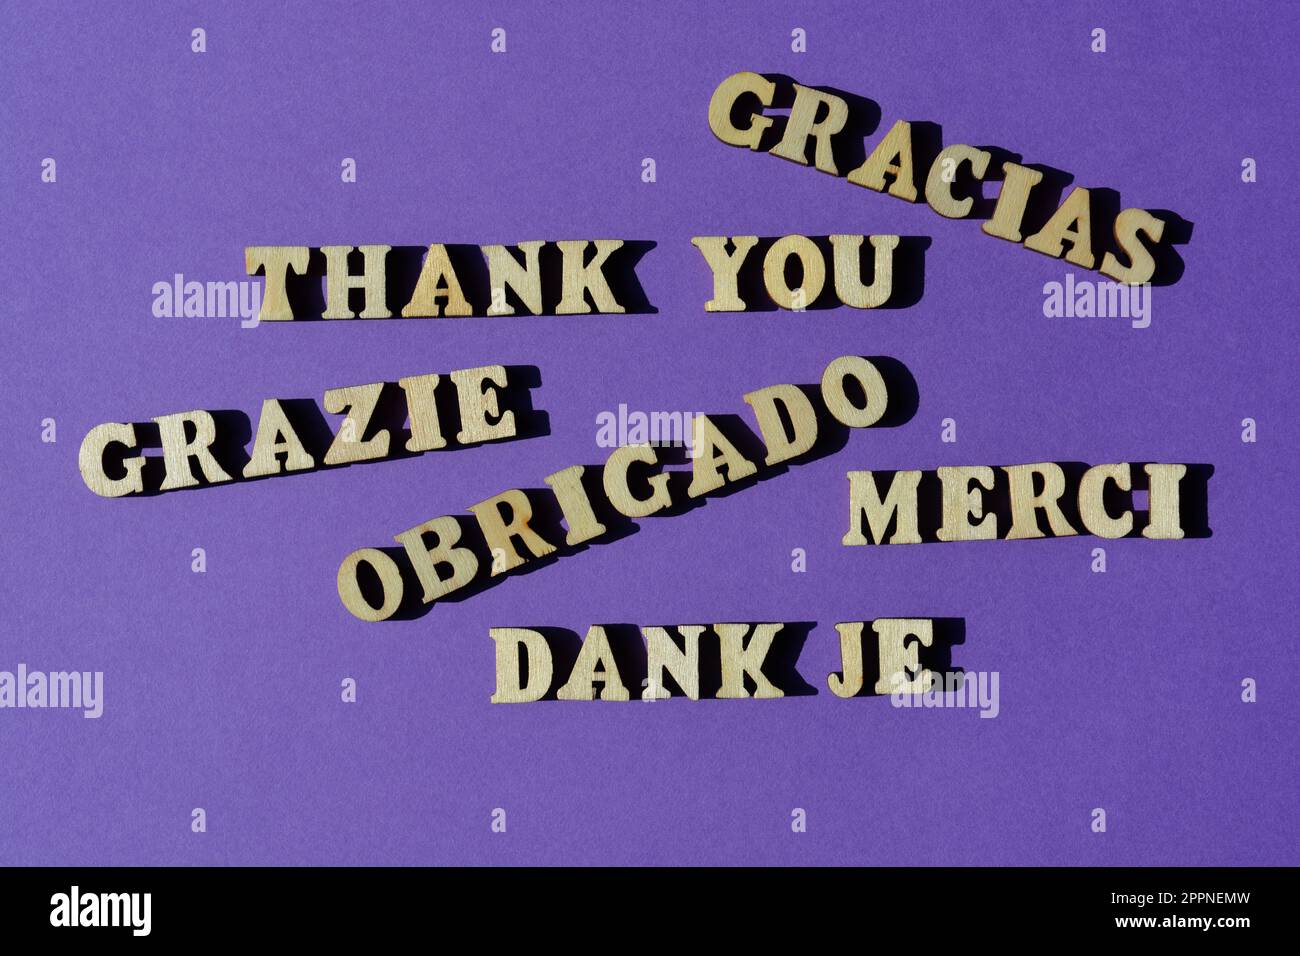 Merci, mot en anglais et différentes langues européennes, isolé sur fond violet Banque D'Images